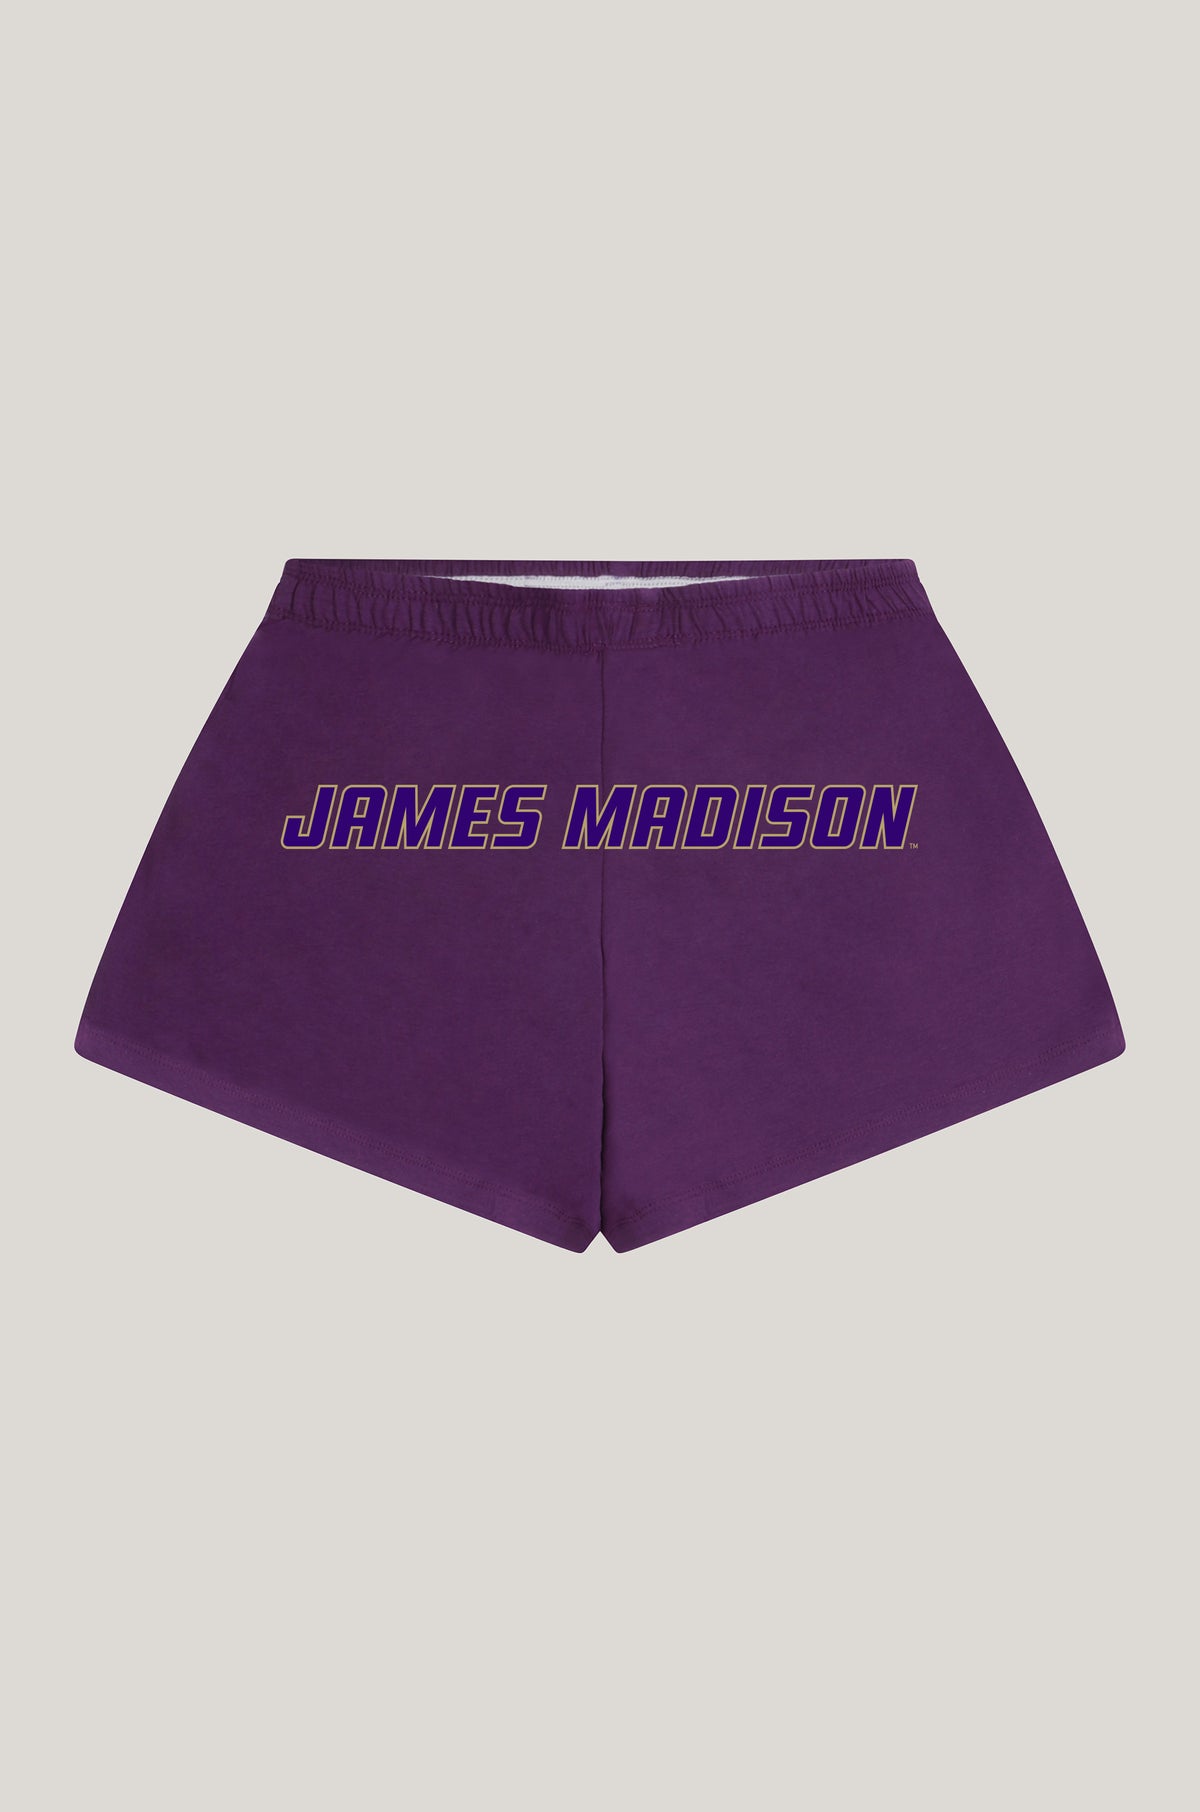 JMU P.E. Shorts